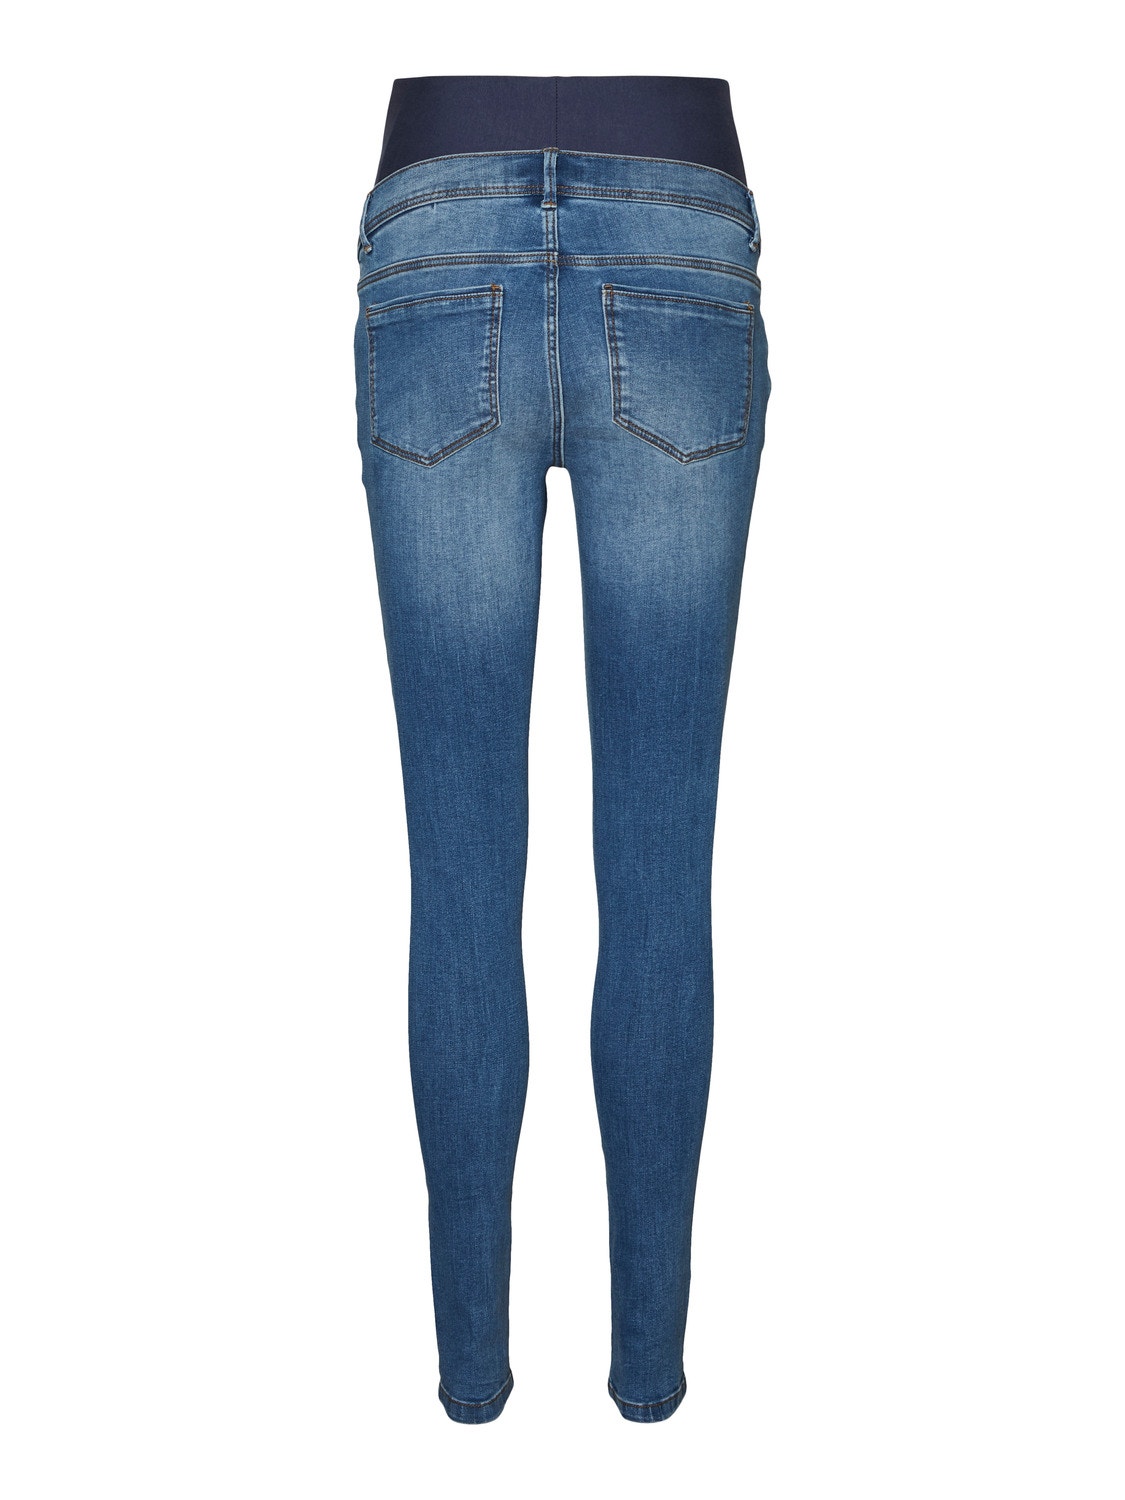 MAMA.LICIOUS Jeans Slim Fit -Medium Blue Denim - 20017192